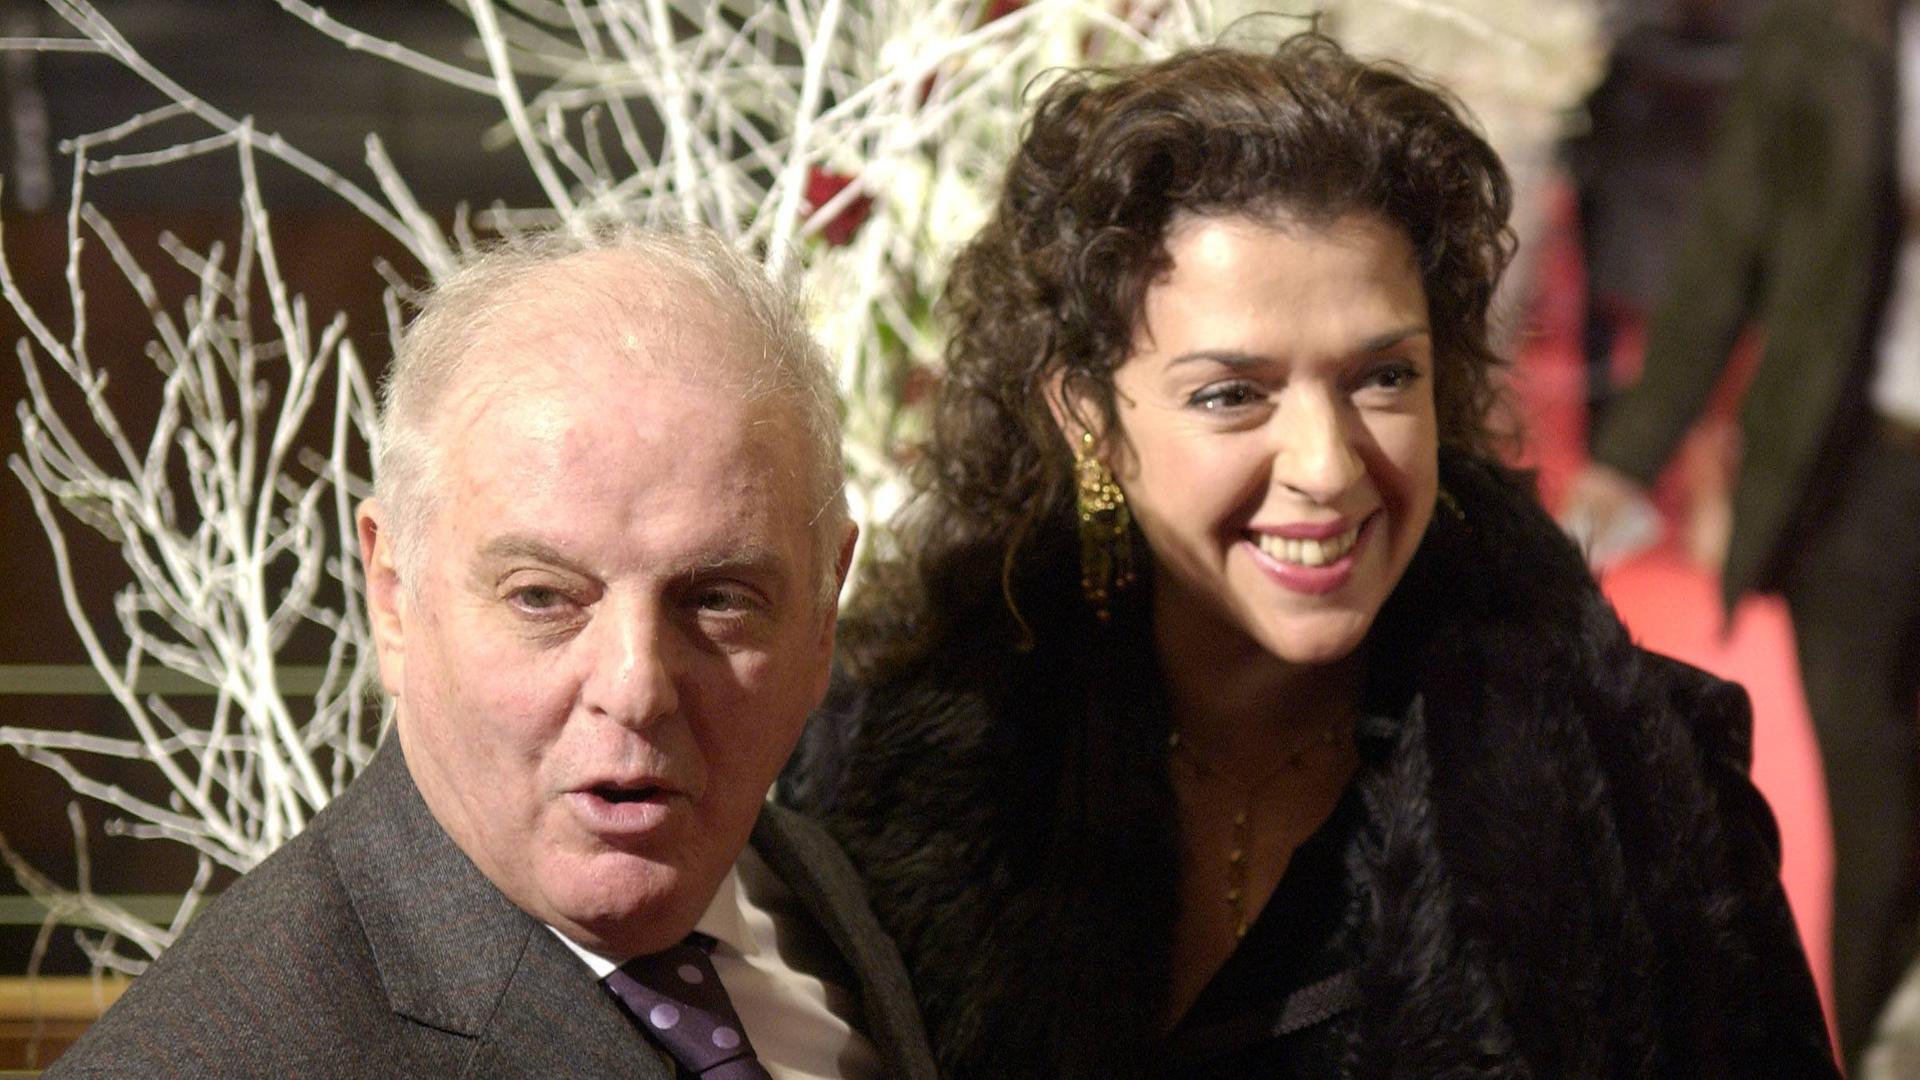 Das Ehepaar Barenboim-Bashkirova lächelt nebeneinander stehend bei einer Festveranstaltung in Konzertkleidung in die Kamera.